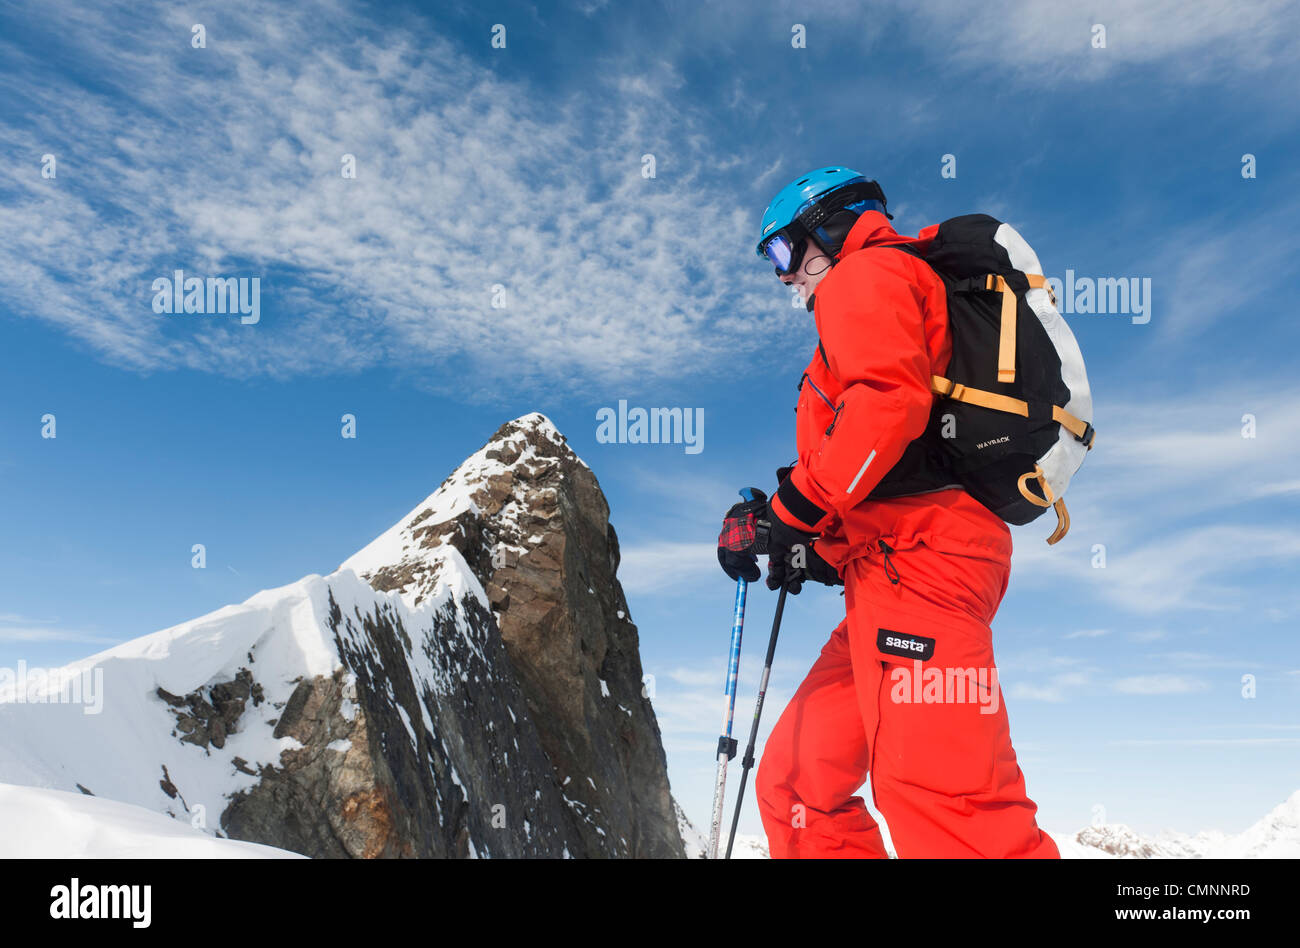 A free skier climbing up a steep rodge in Stubai, Austria. Stock Photo